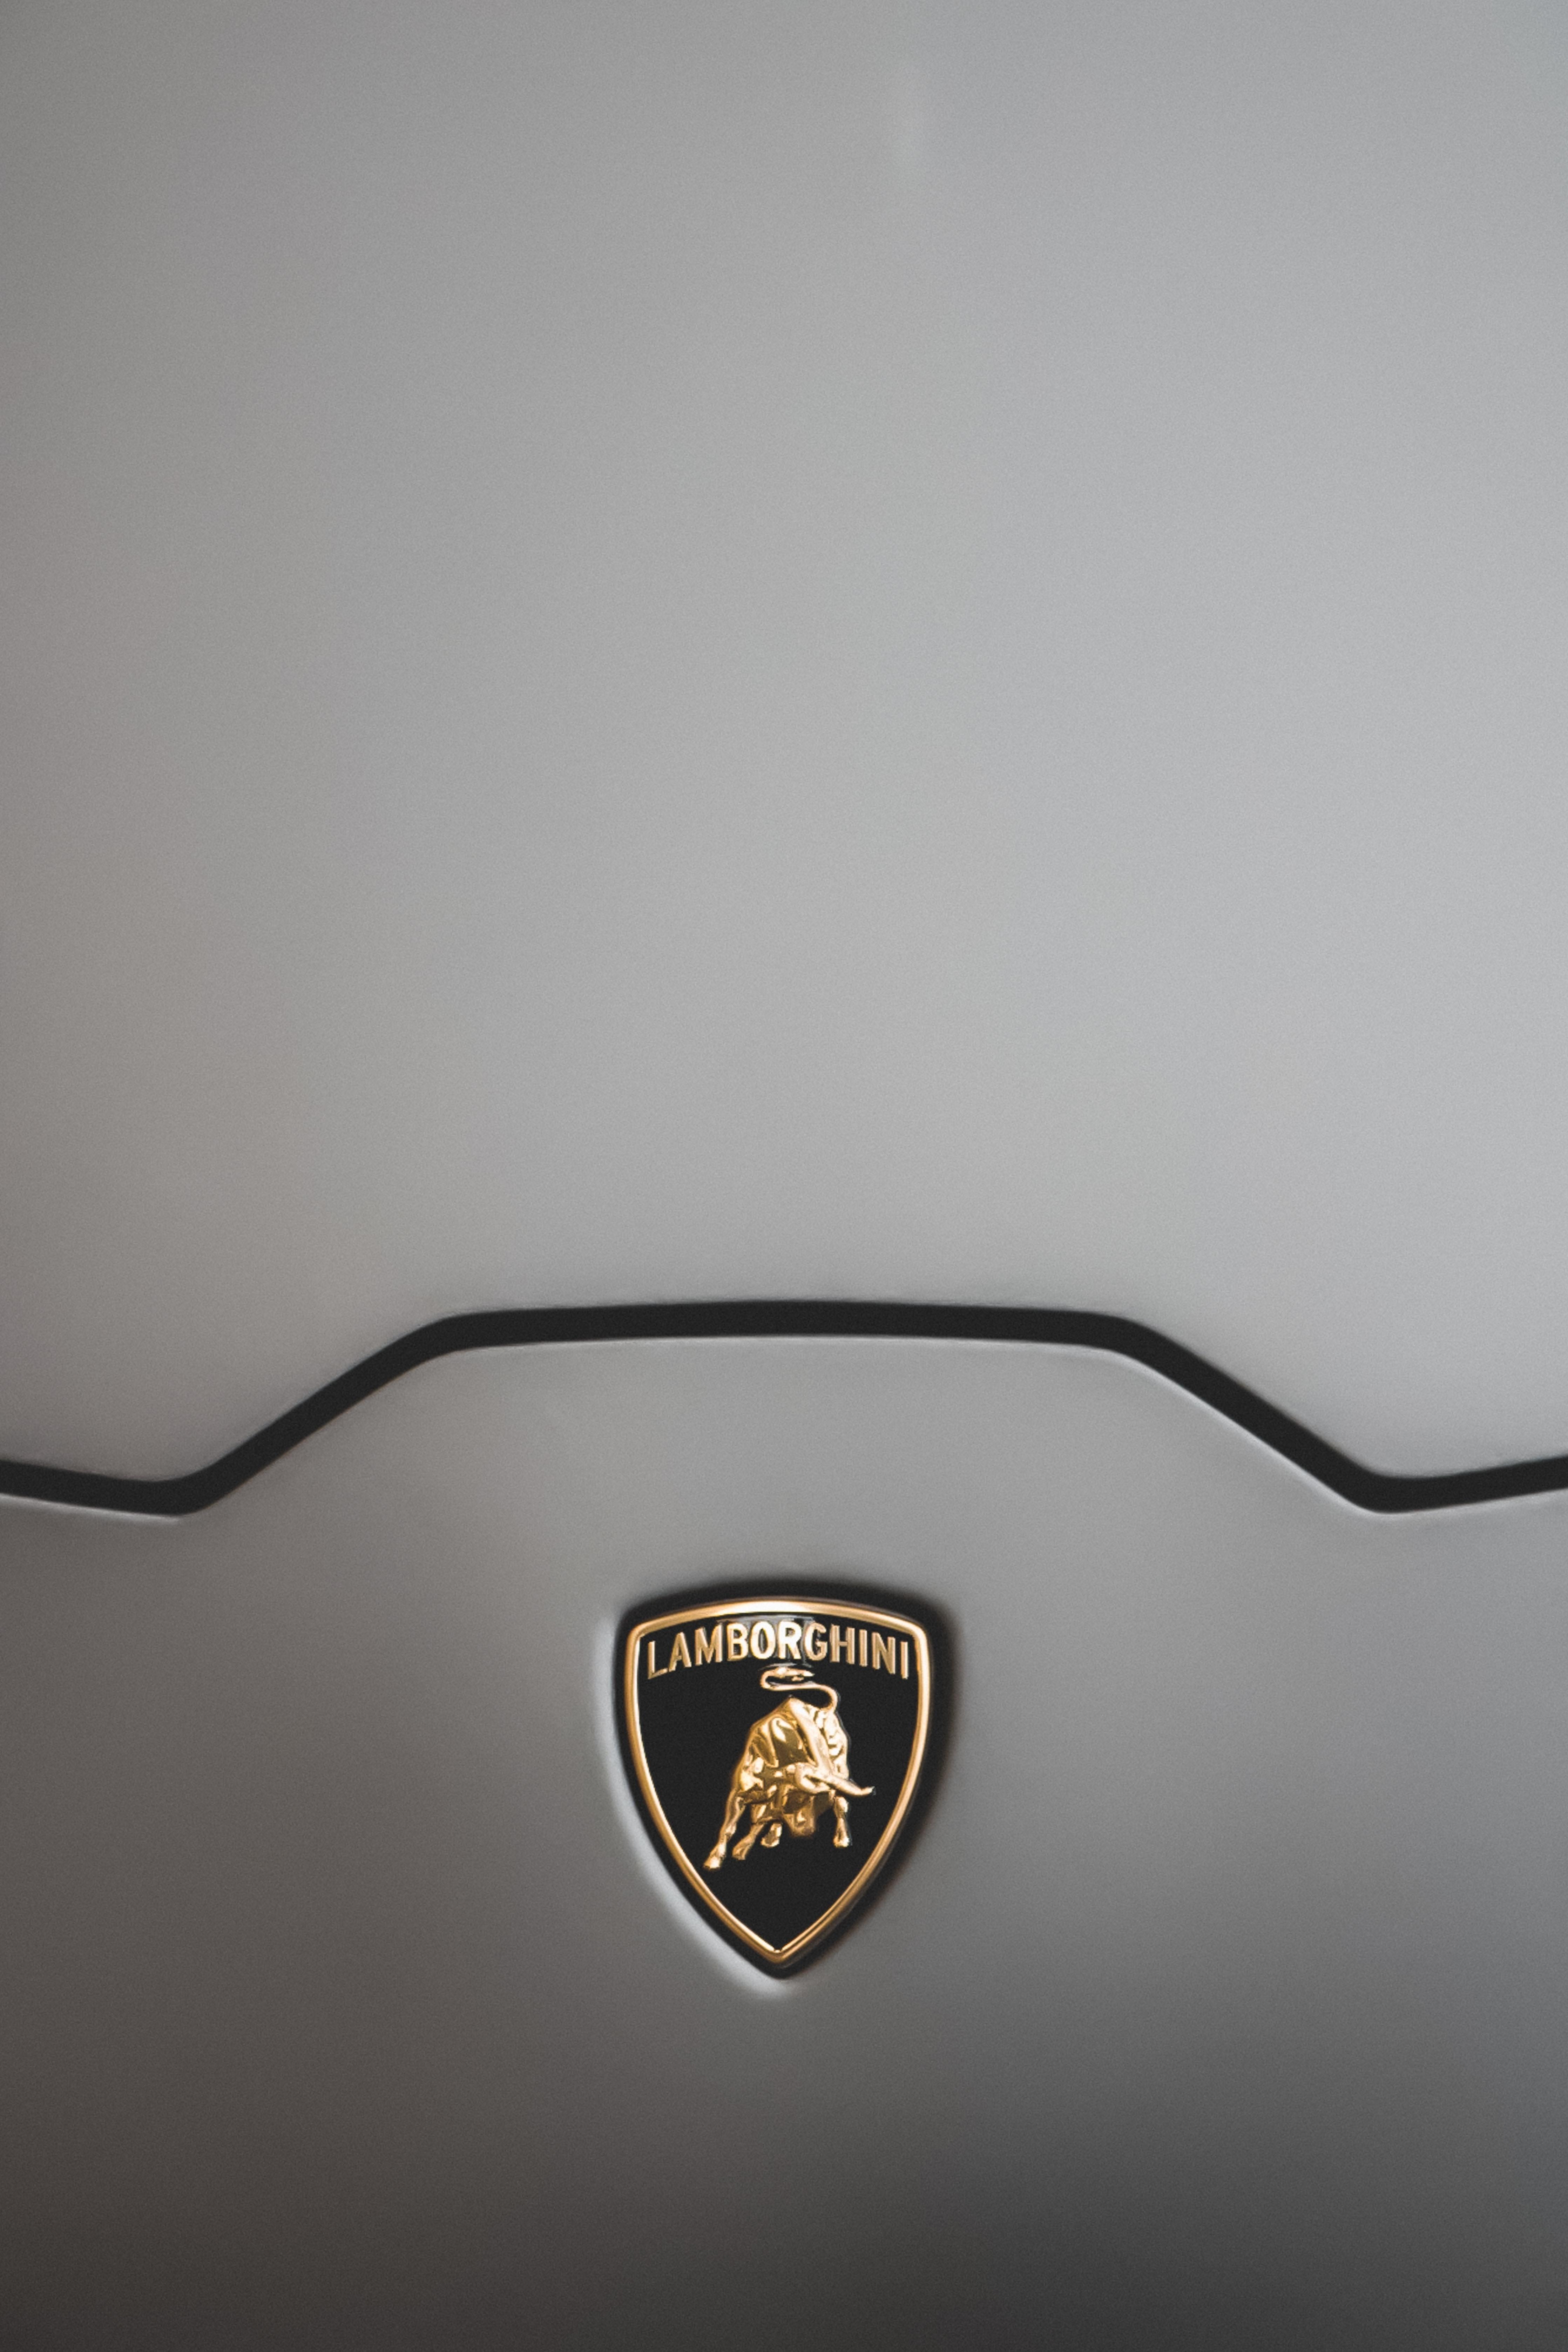 Lamborghini emblem photo